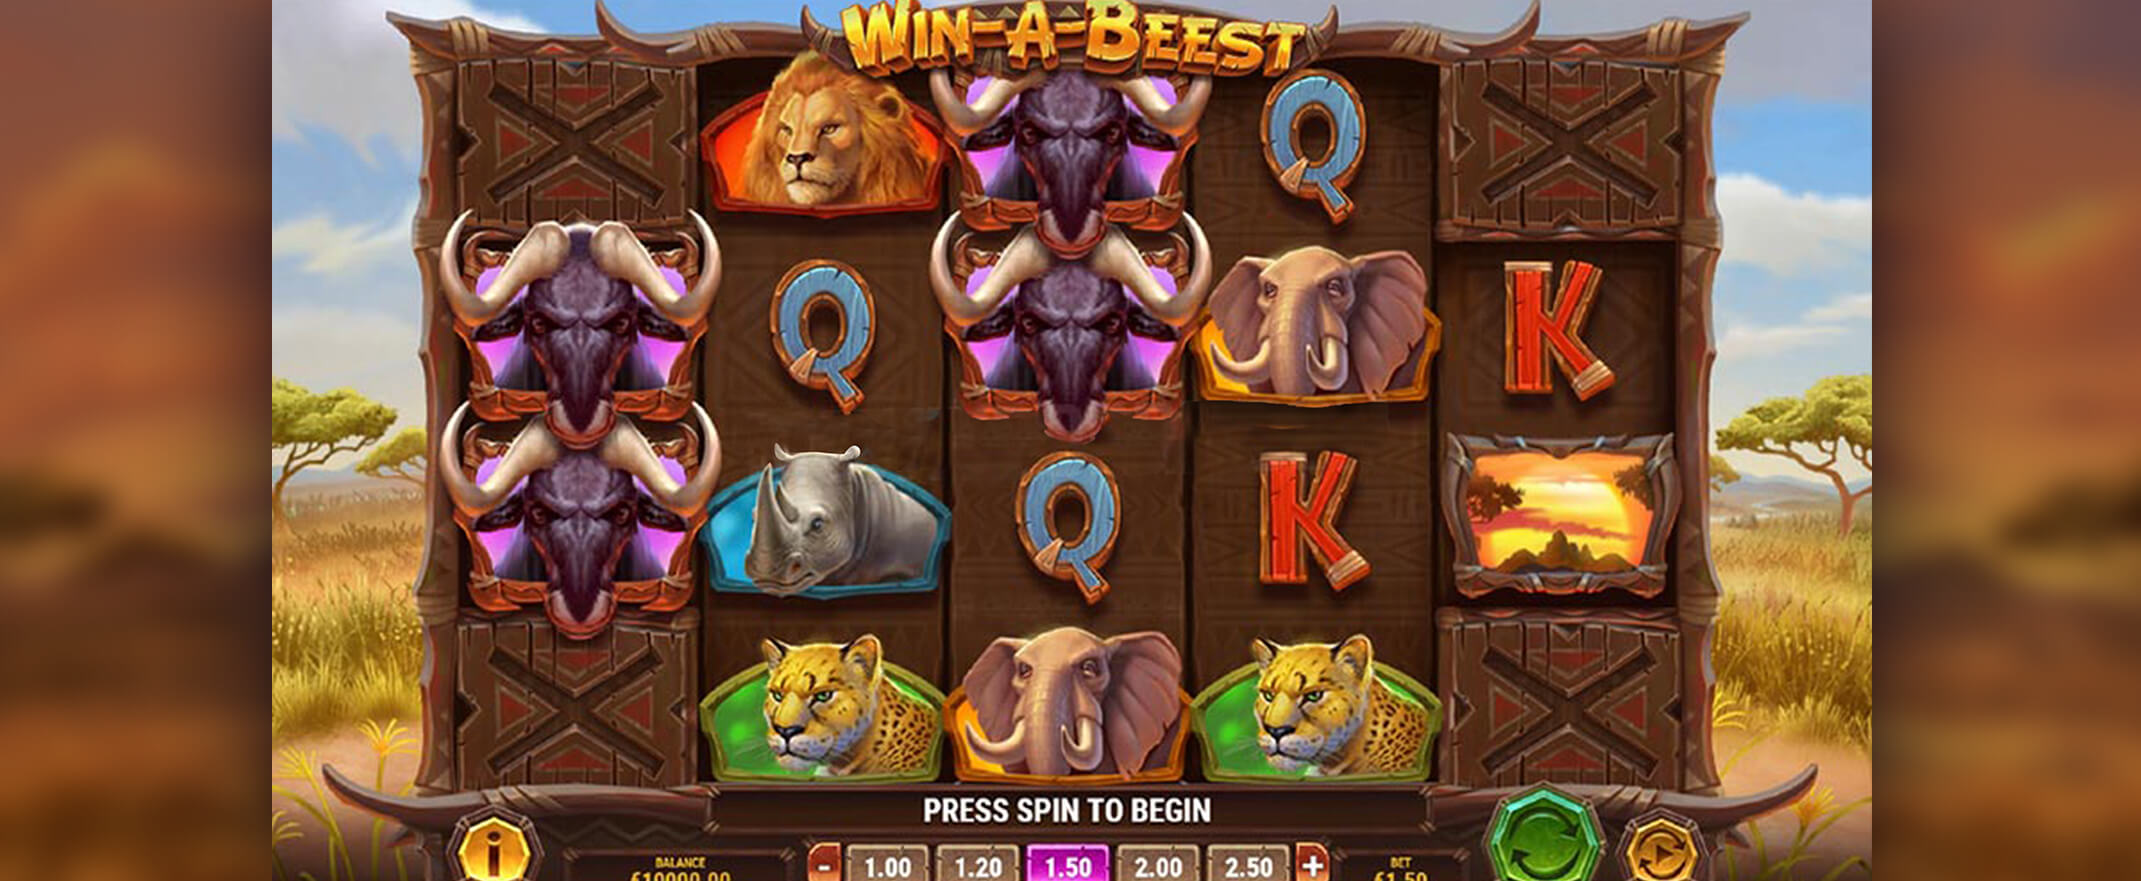 Win-A-Beest Spielautomaten Bewertung & Symbole